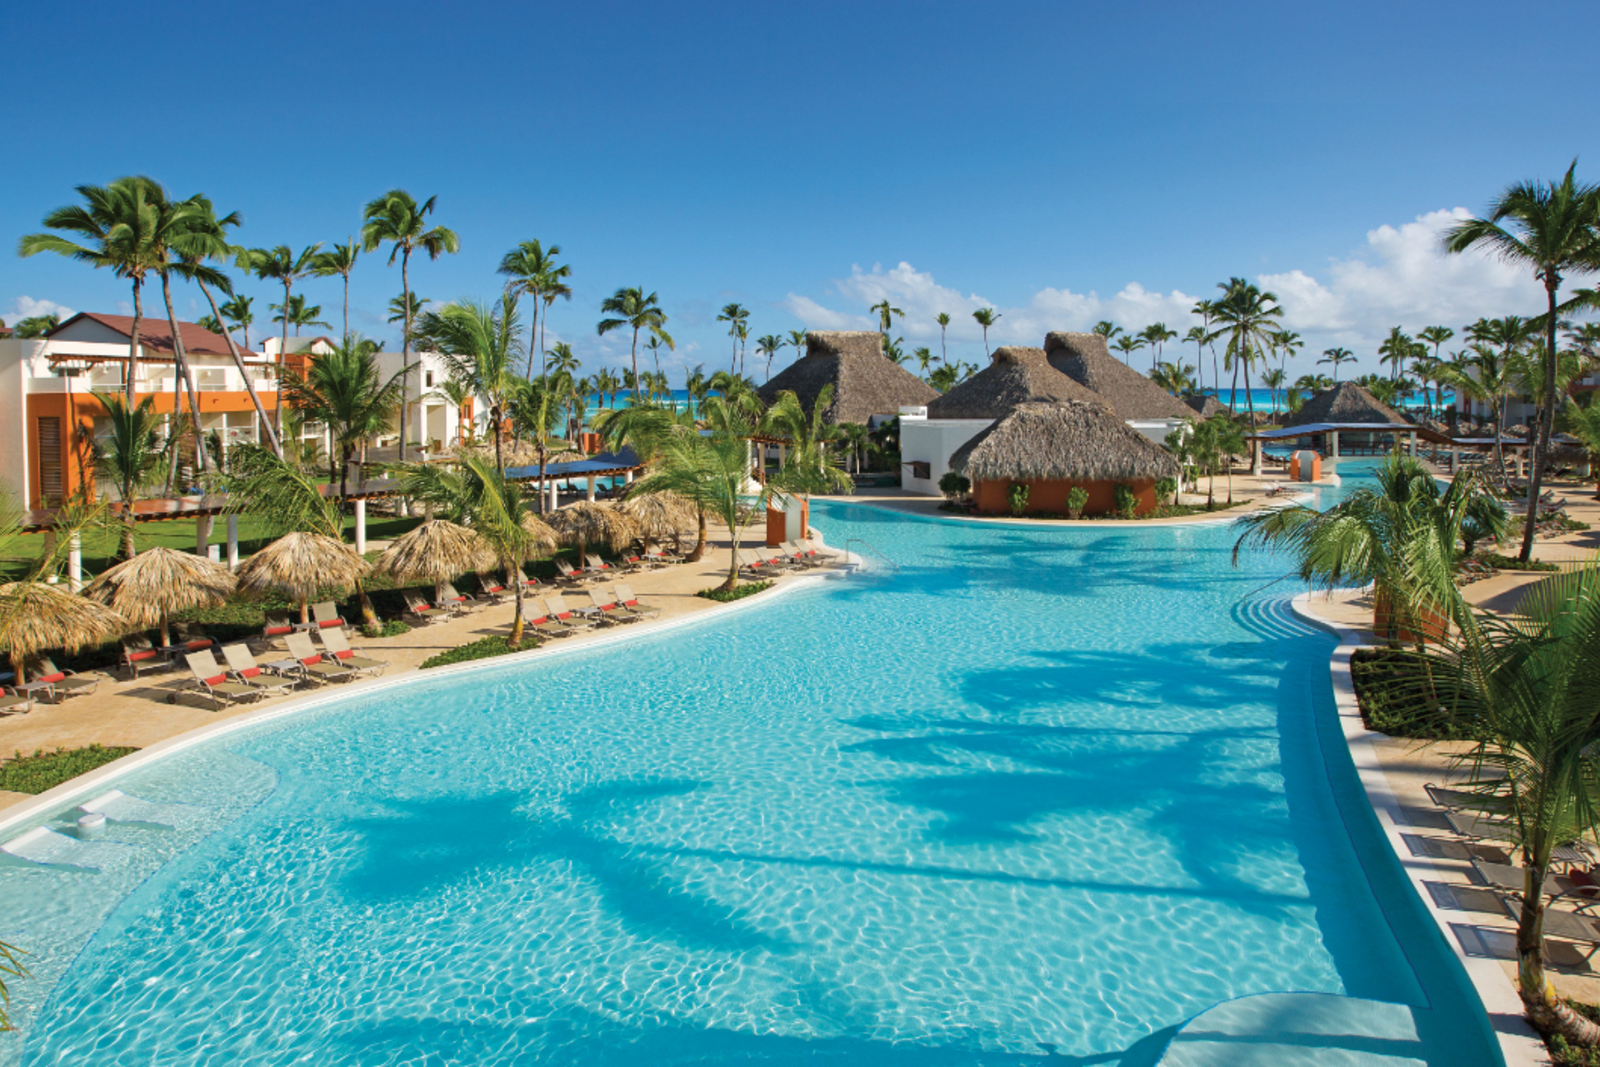 The pool at Breathless Punta Cana Resort & Spa